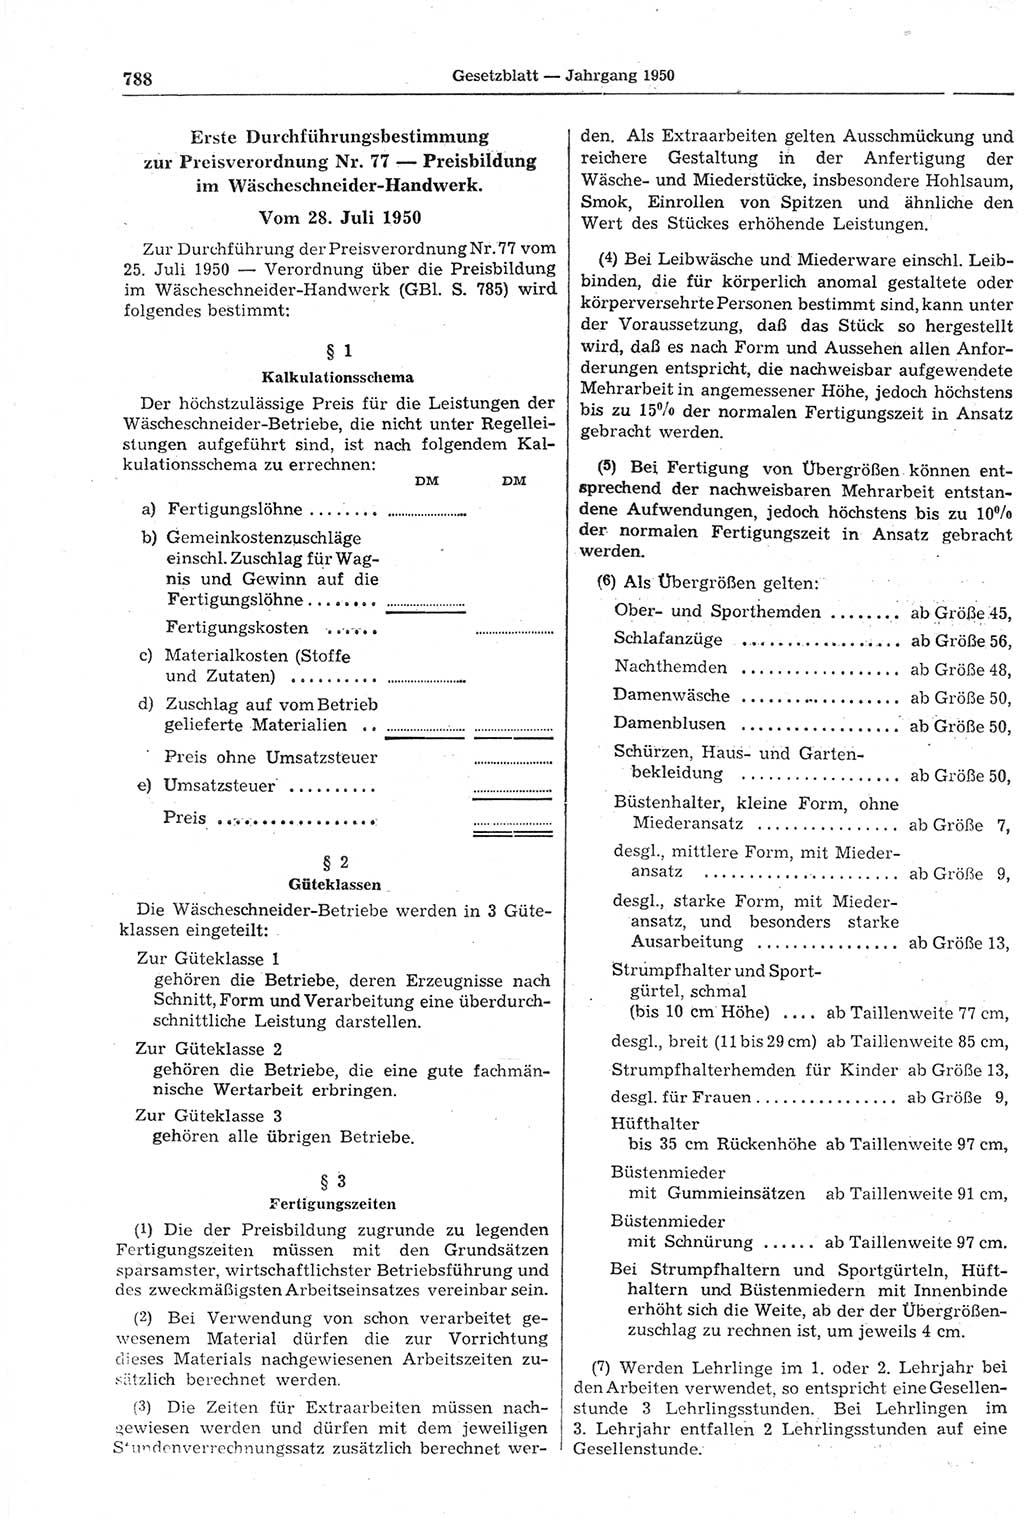 Gesetzblatt (GBl.) der Deutschen Demokratischen Republik (DDR) 1950, Seite 788 (GBl. DDR 1950, S. 788)